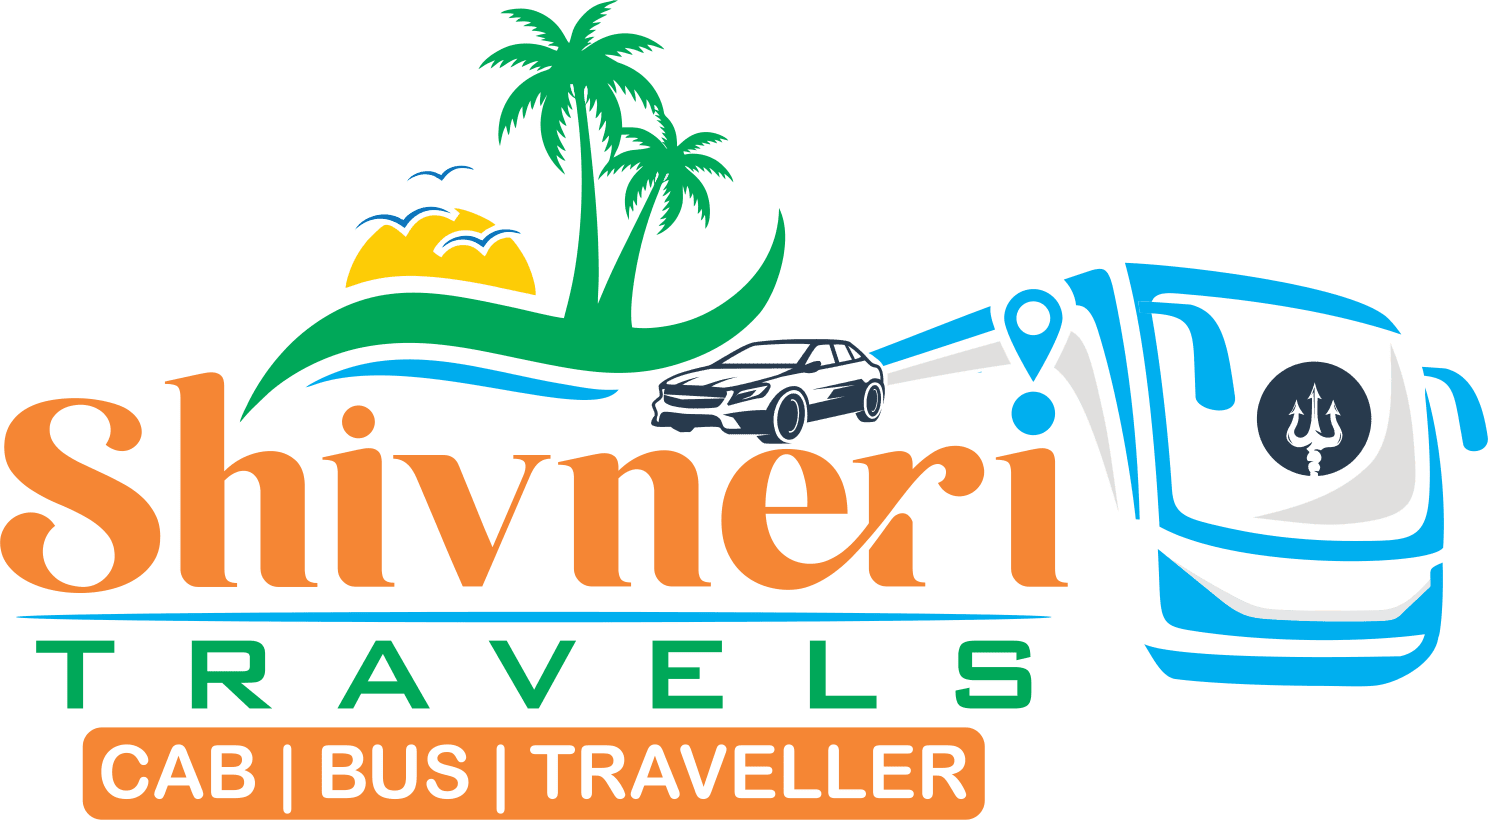 Shivneri Tours & Travels